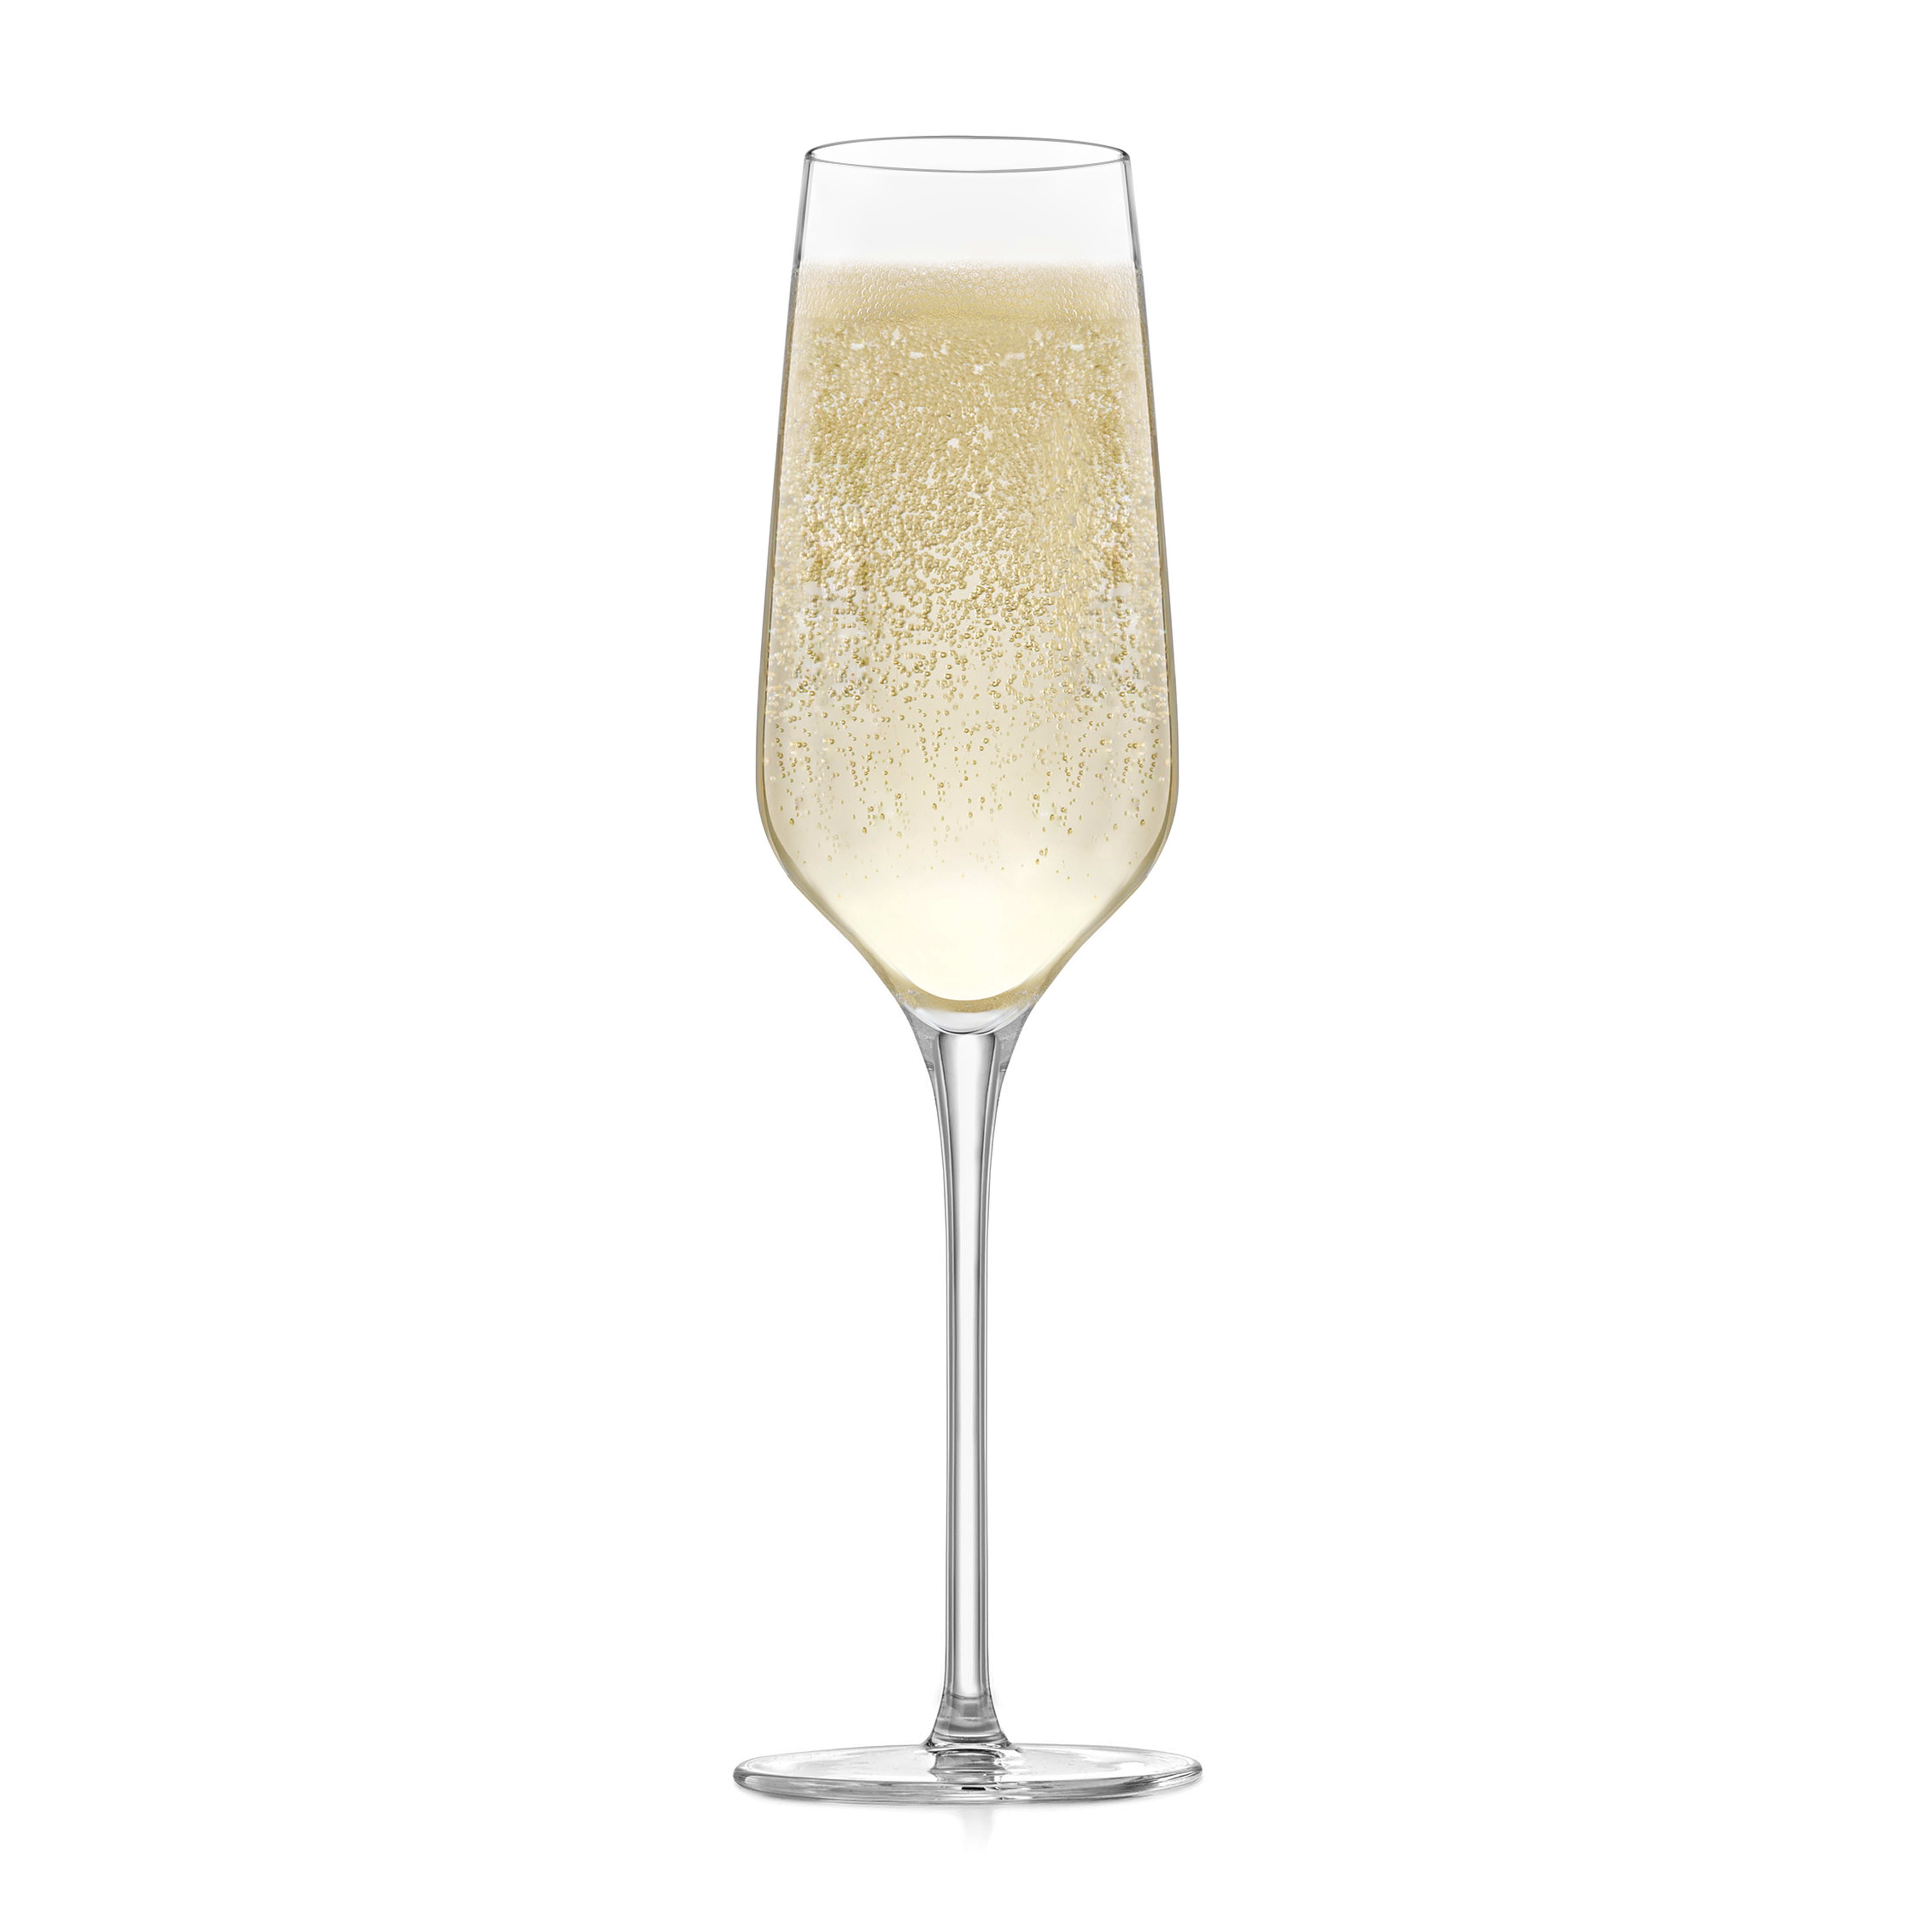 Advertising Libbey Hexagonal Stem Champagne Flute Glasses (6 Oz.), Drinkware & Barware